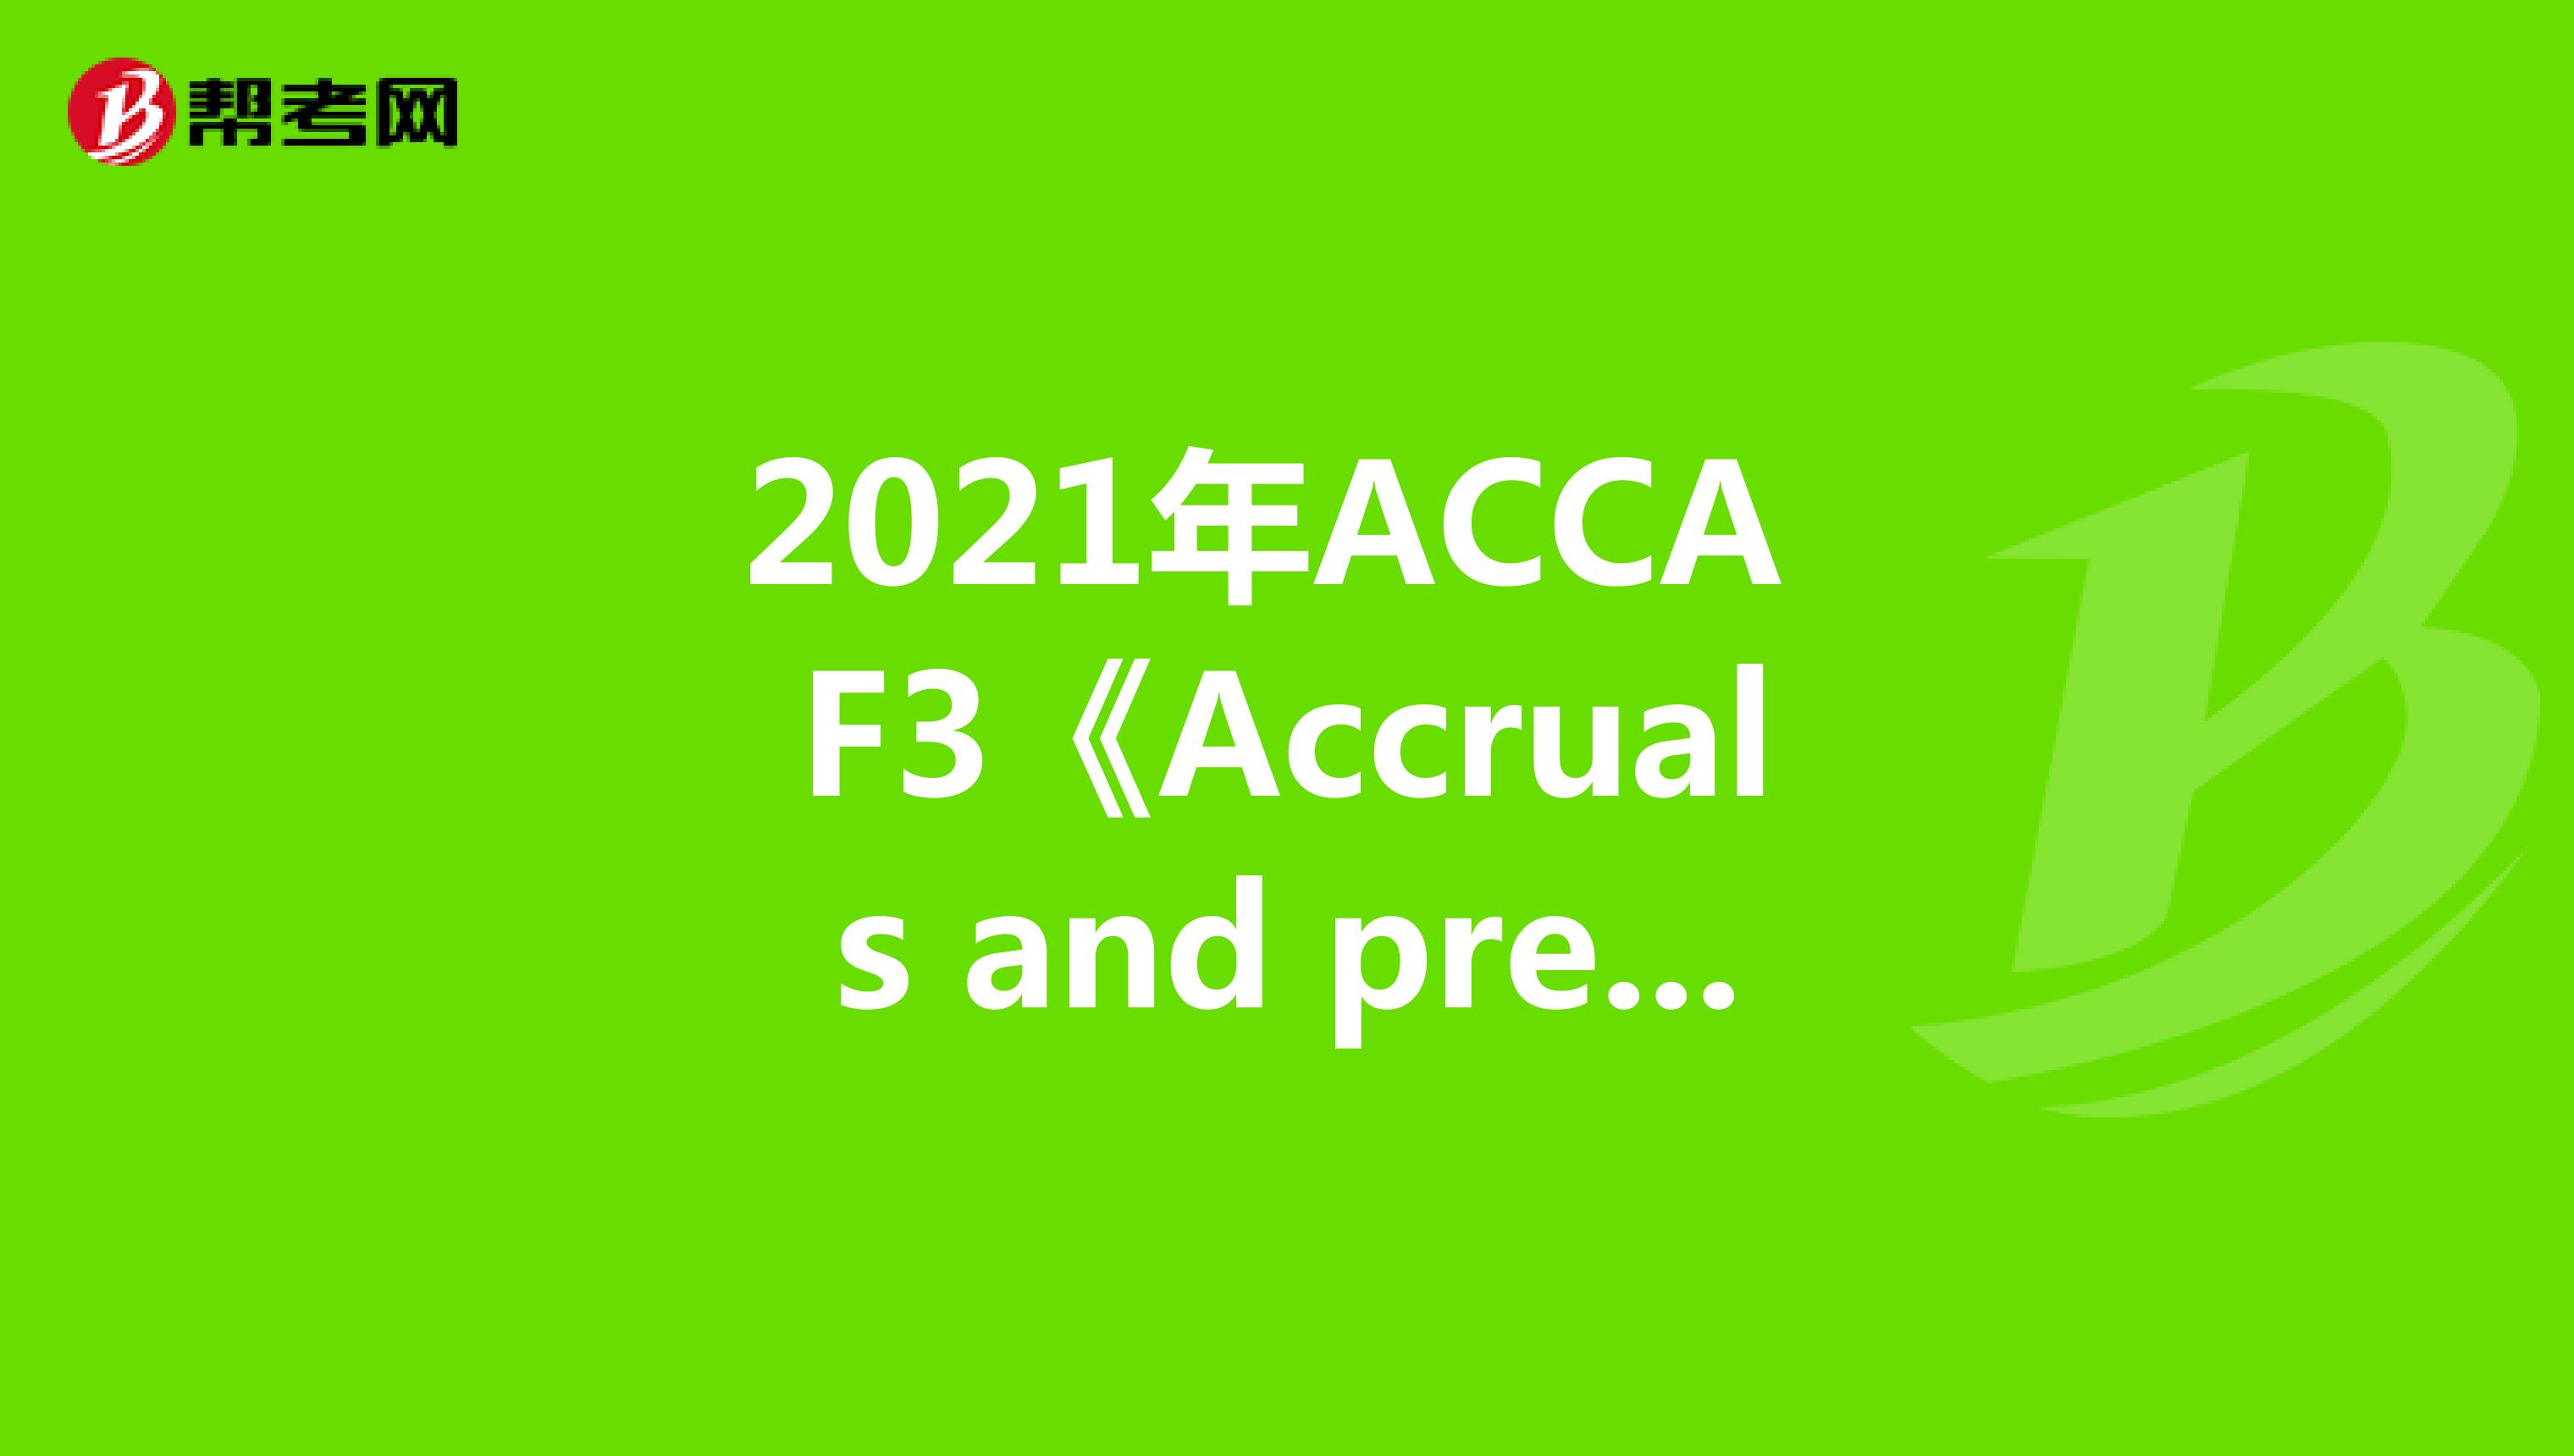 2021年ACCA F3《Accruals and prepayments》常考知识点